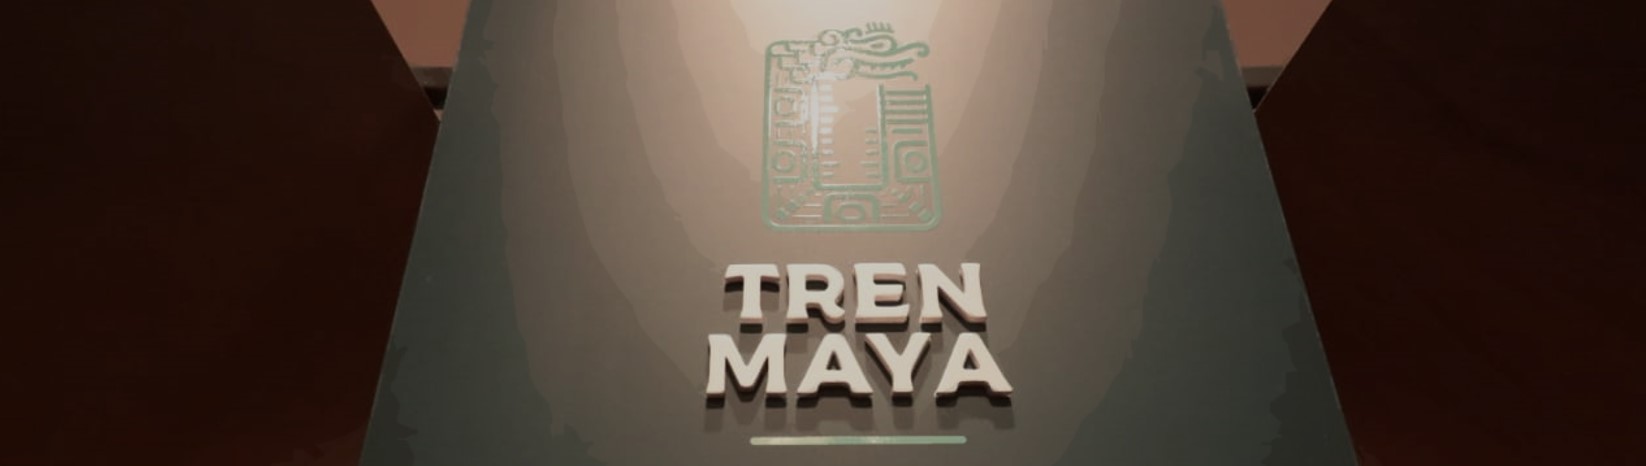 HOMO ESPACIOS: El Tren Maya en Los Pinos, el Munavi… y otras notas